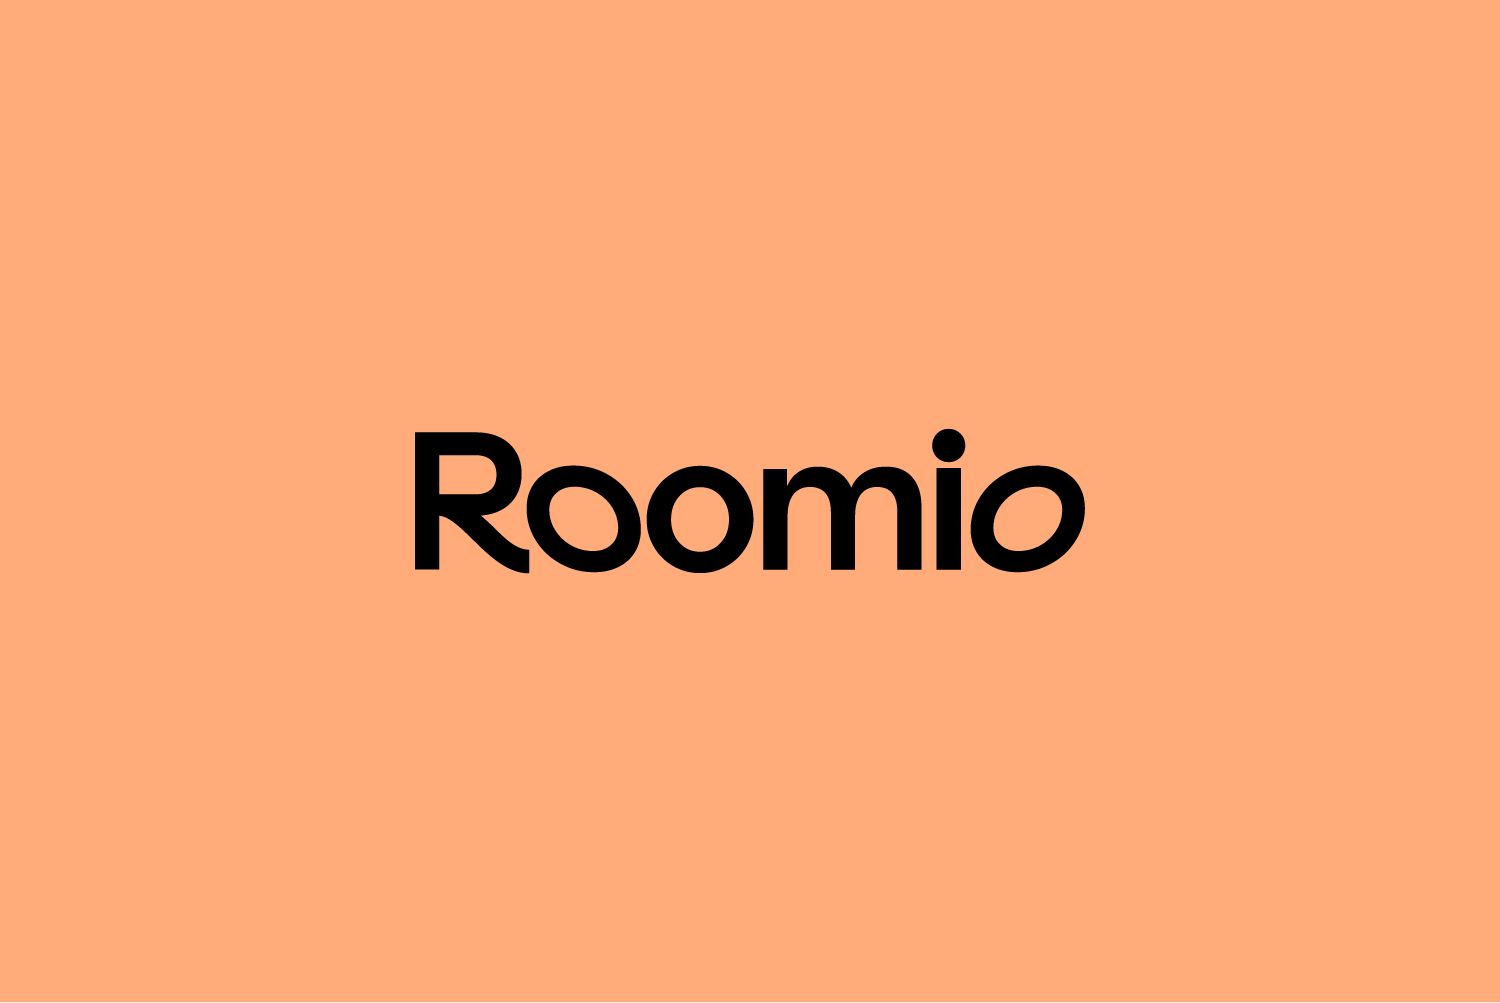 Roomio logo